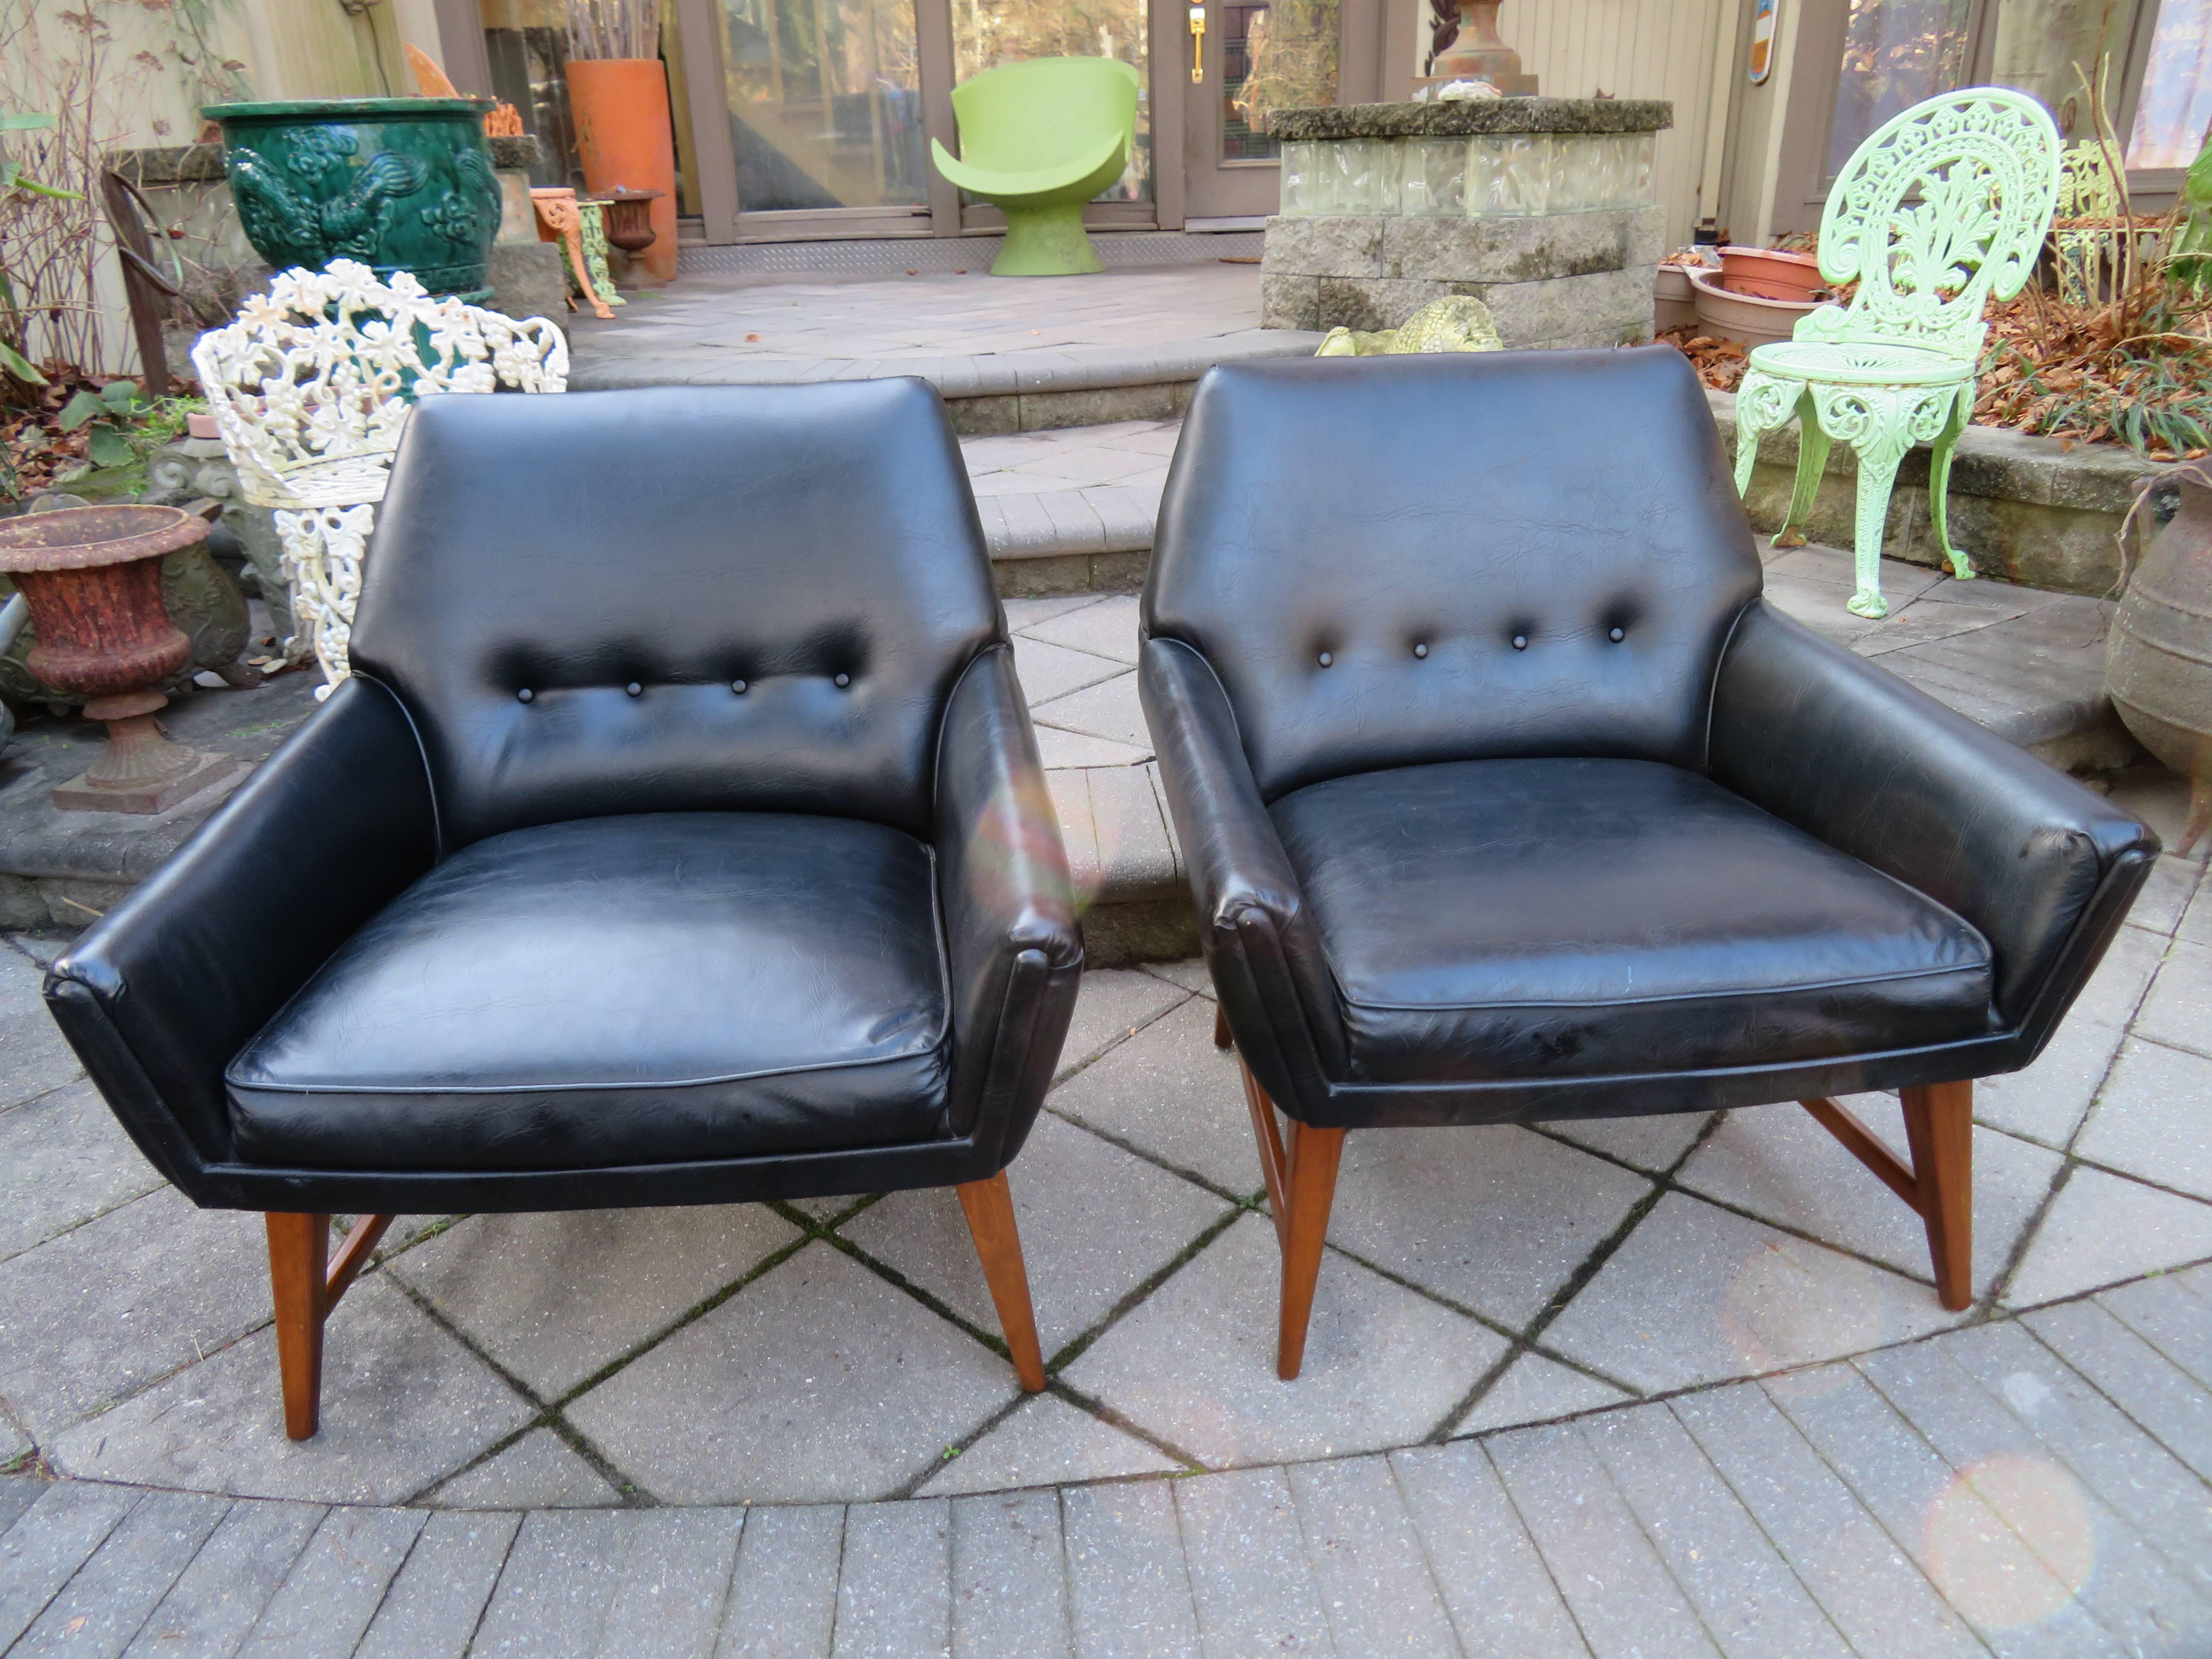 Hübsches Paar moderner dänischer Loungesessel mit Nussbaumgestell. Wir lieben das stilvolle, breite, niedrige Profil und die sexy Ausstrahlung, die diese Stühle ausstrahlen. Schön, wie es ist, mit ihrer ursprünglichen Kunstlederpolsterung oder neu